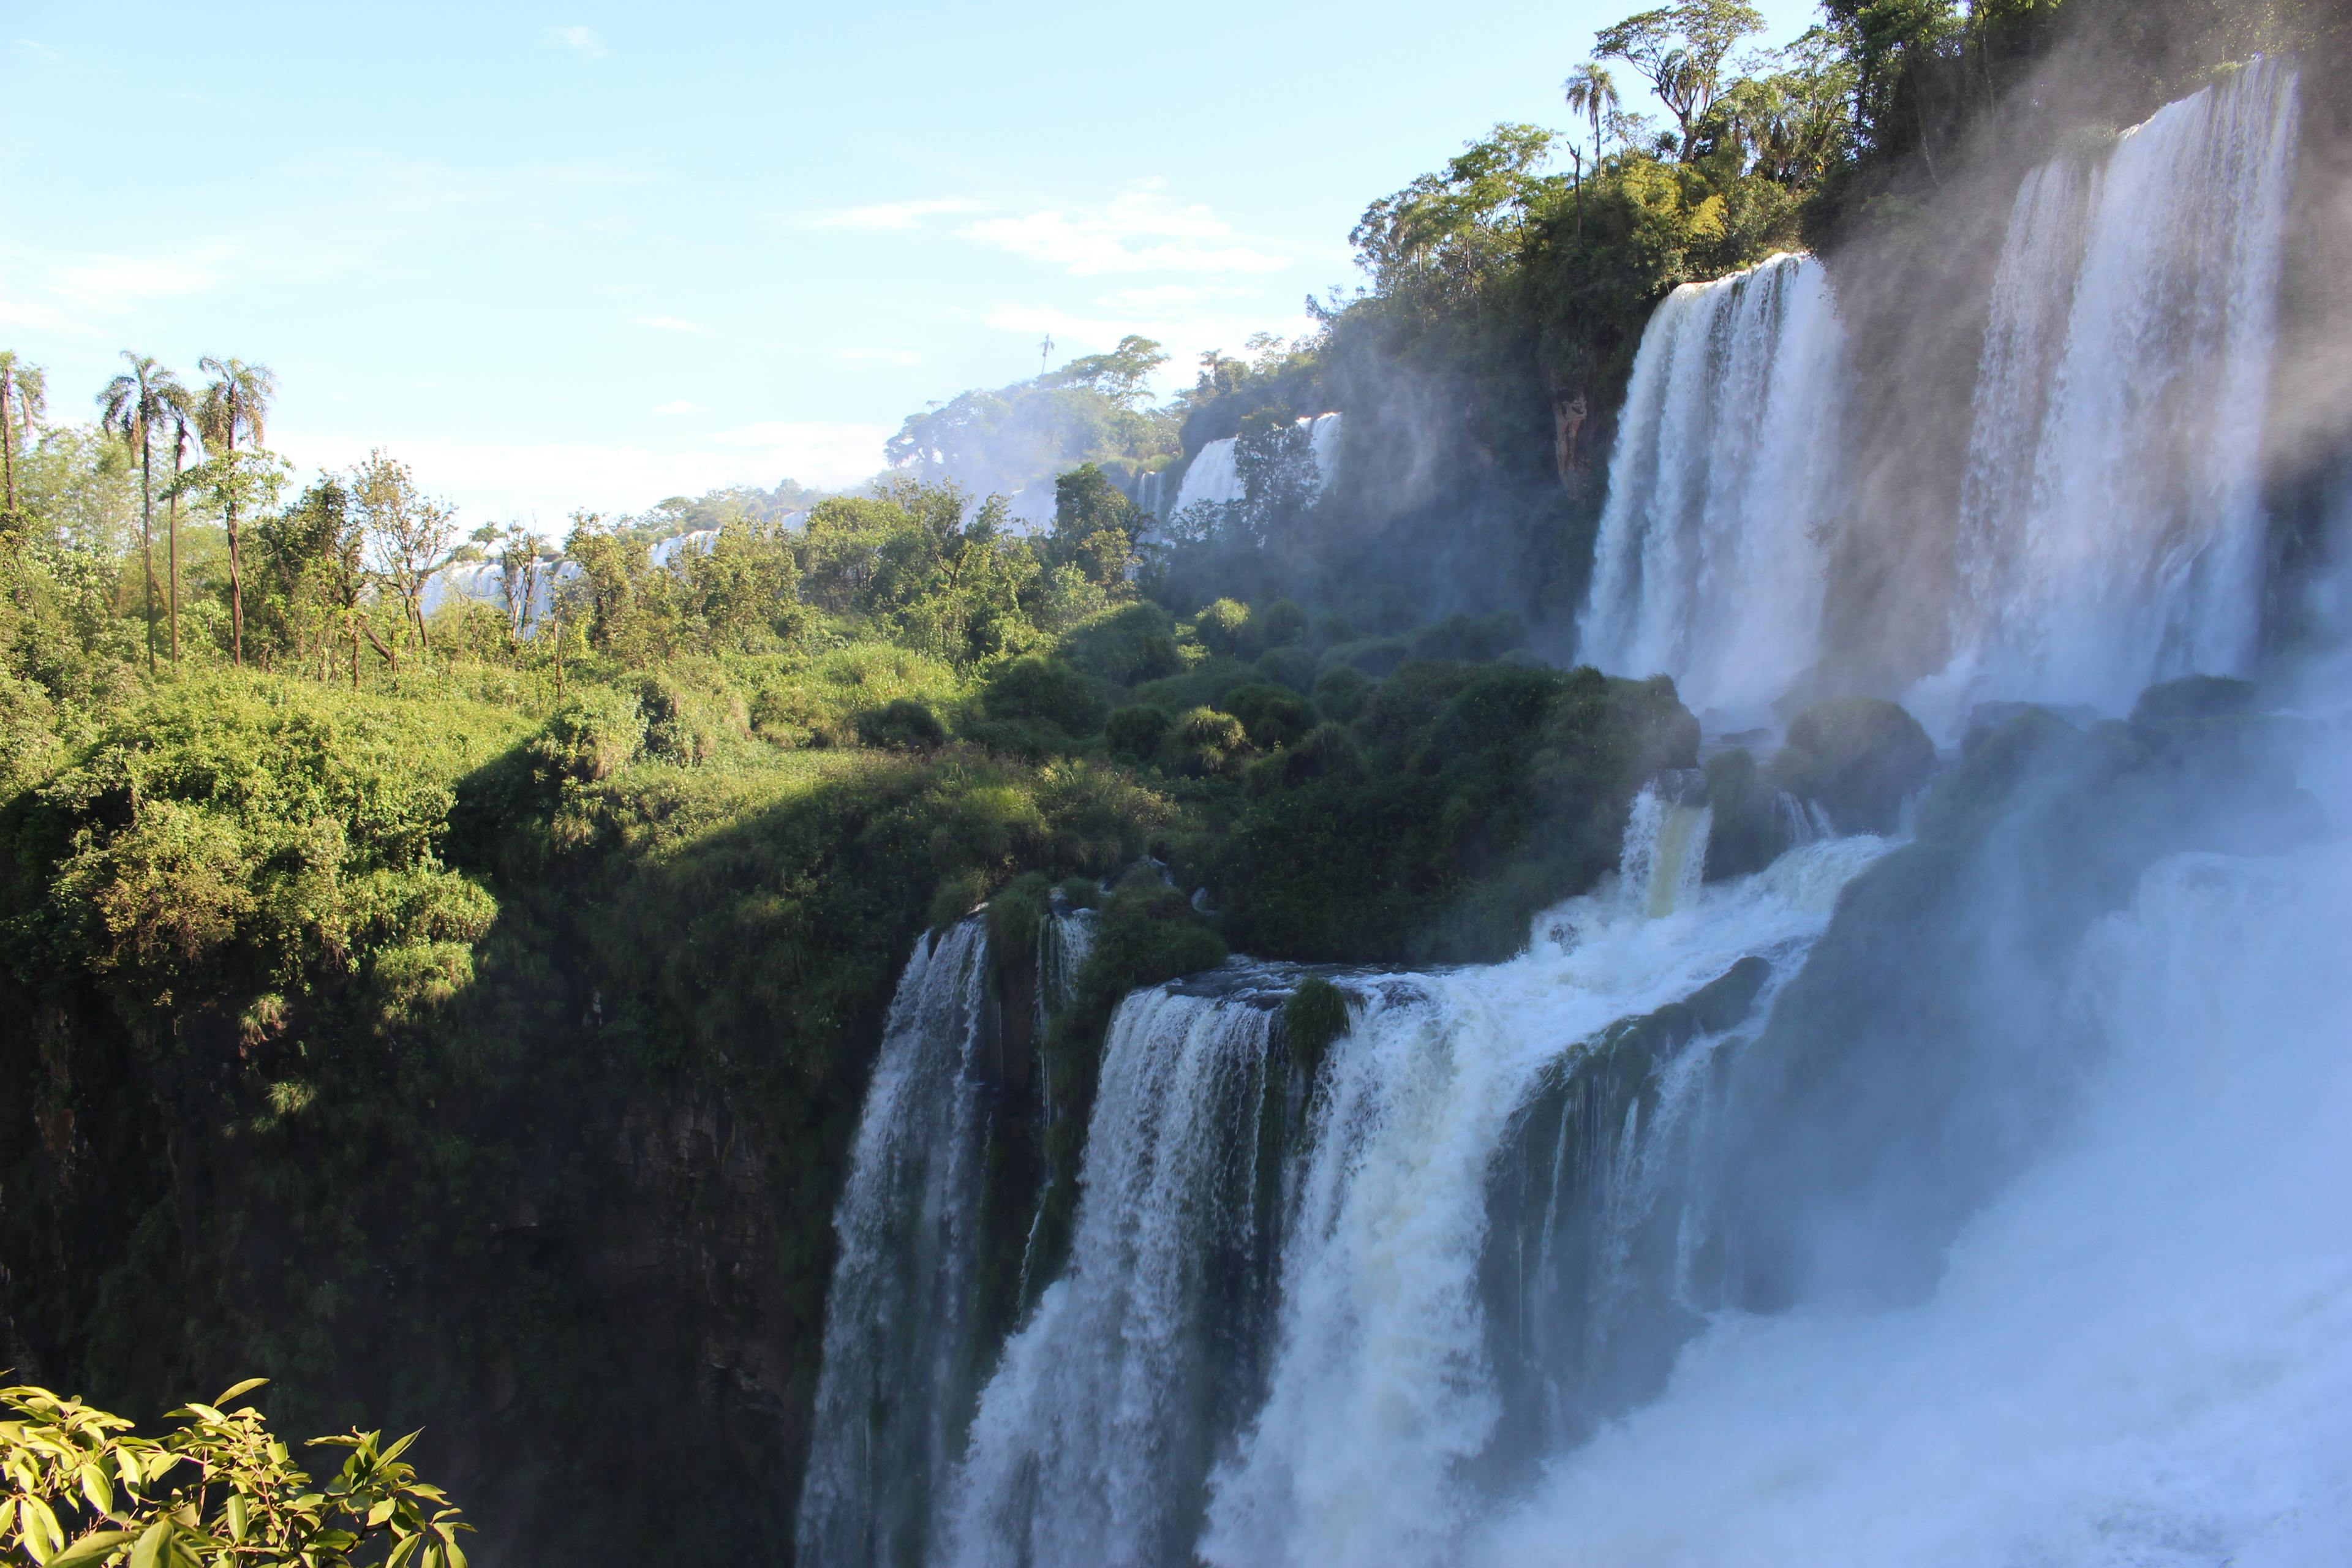 Standing next to Iguazú Falls